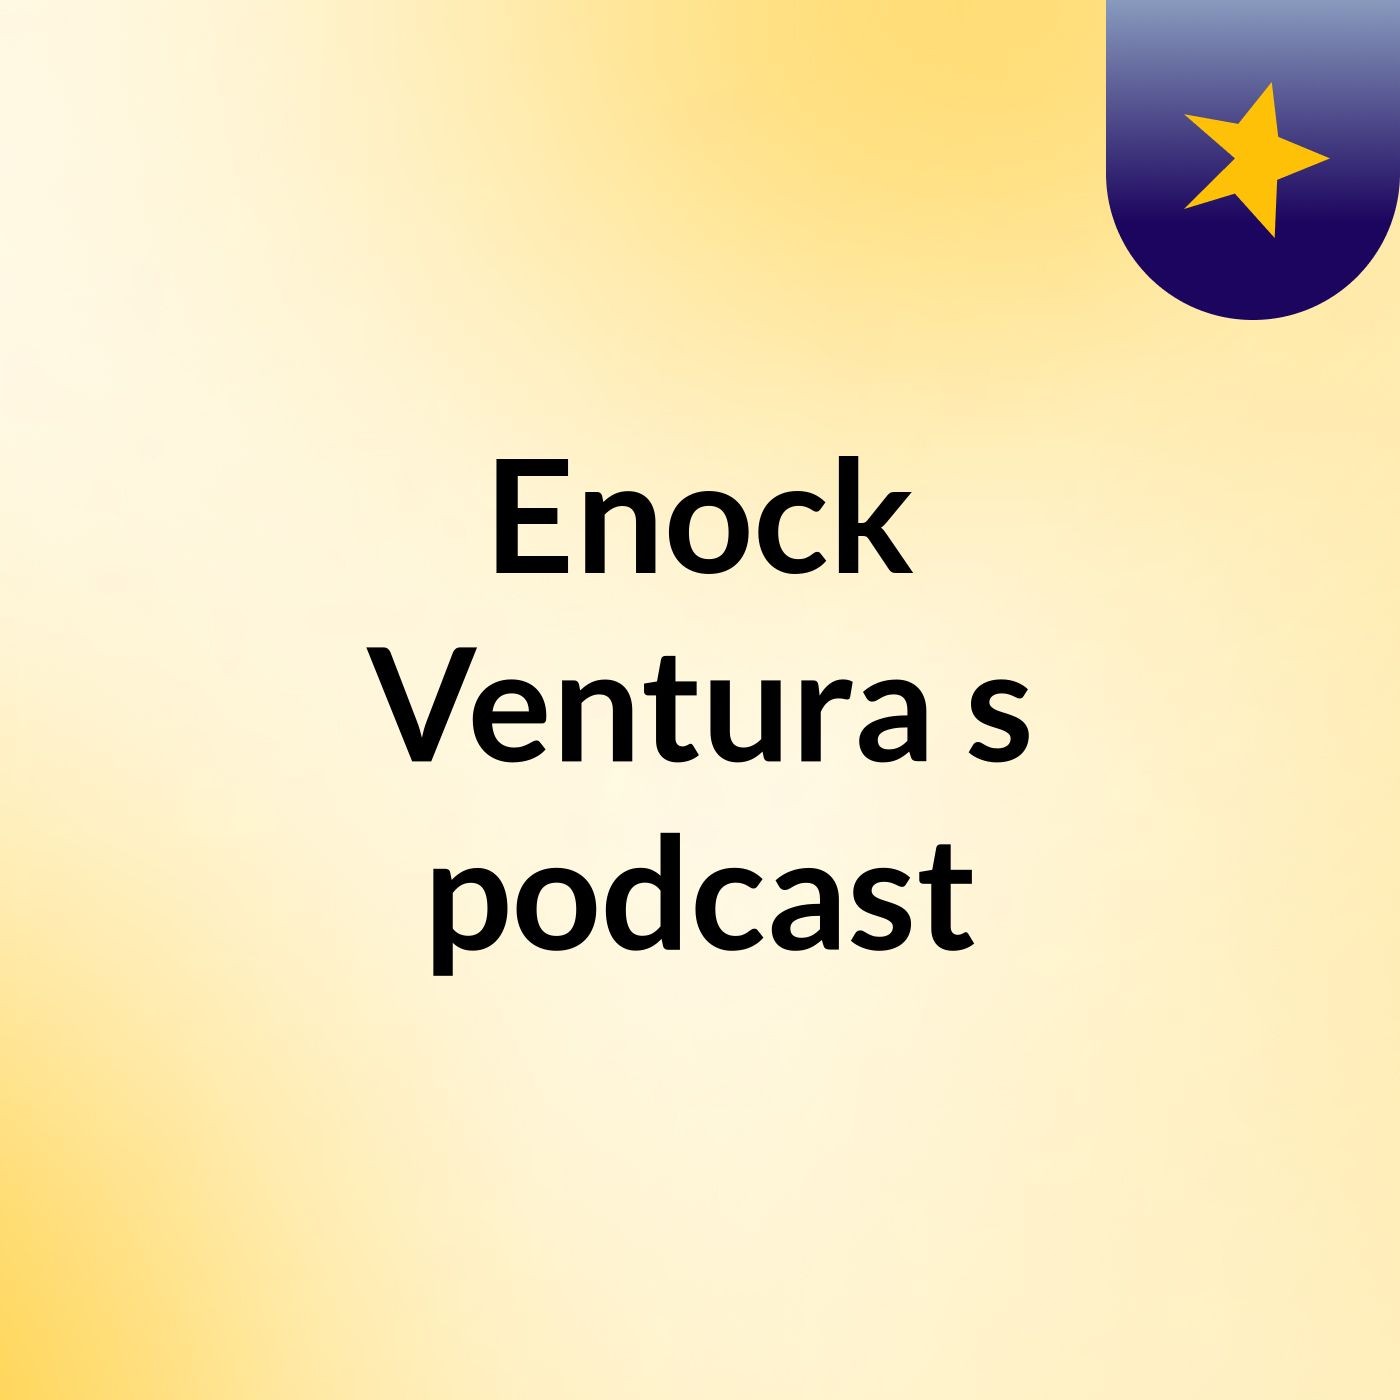 Enock Ventura's podcast